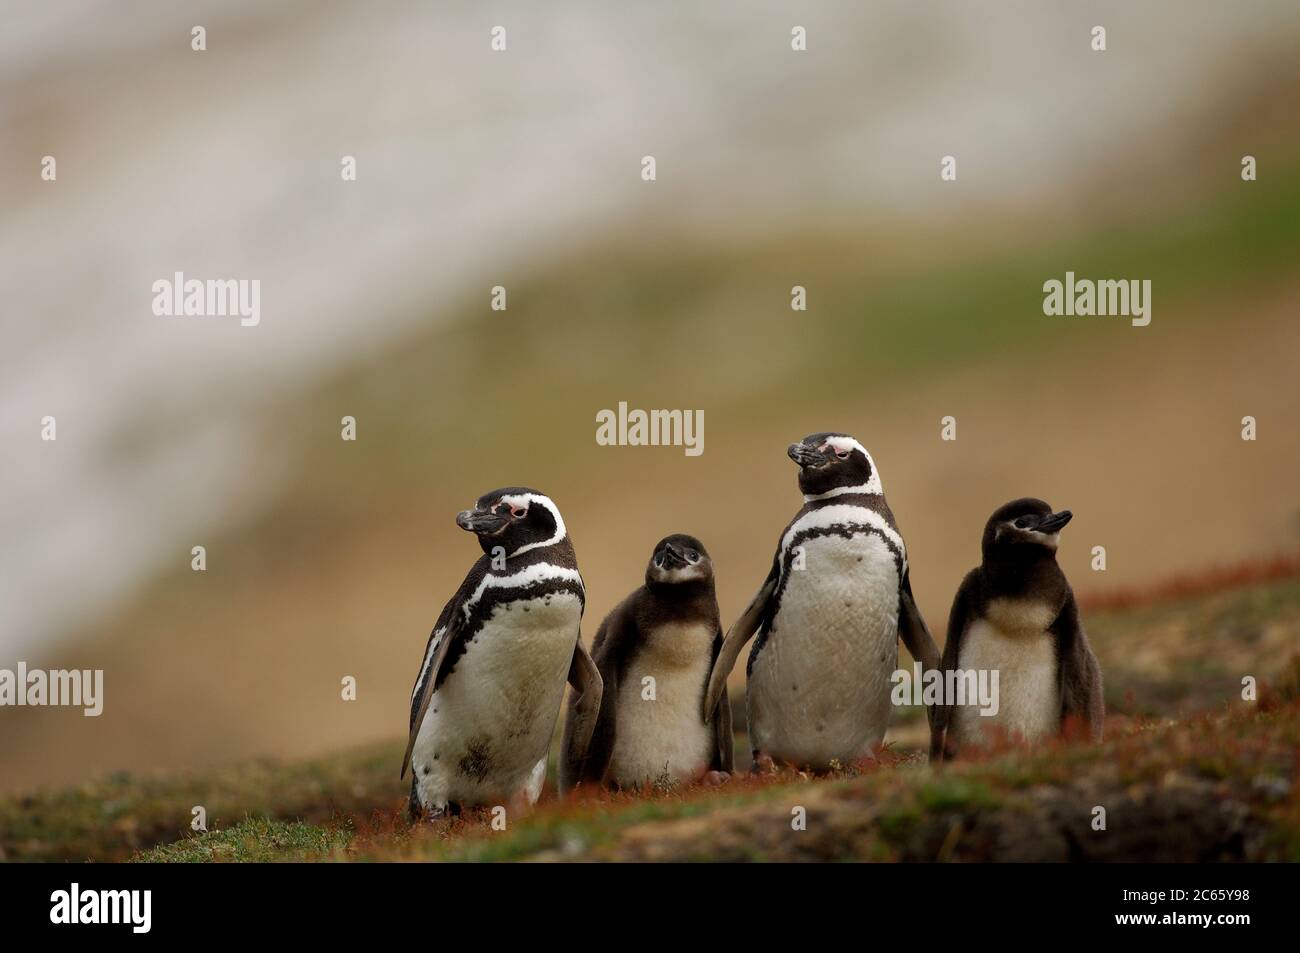 Los polluelos más pequeños del pingüino magallánico (Spheniscus magellanicus) se alimentan con frecuencia, pero estos polluelos de más de dos semanas de edad deben esperar de dos a tres días para su próxima comida. Los padres se reúnen por un corto tiempo durante el "cambio de guardia". Foto de stock